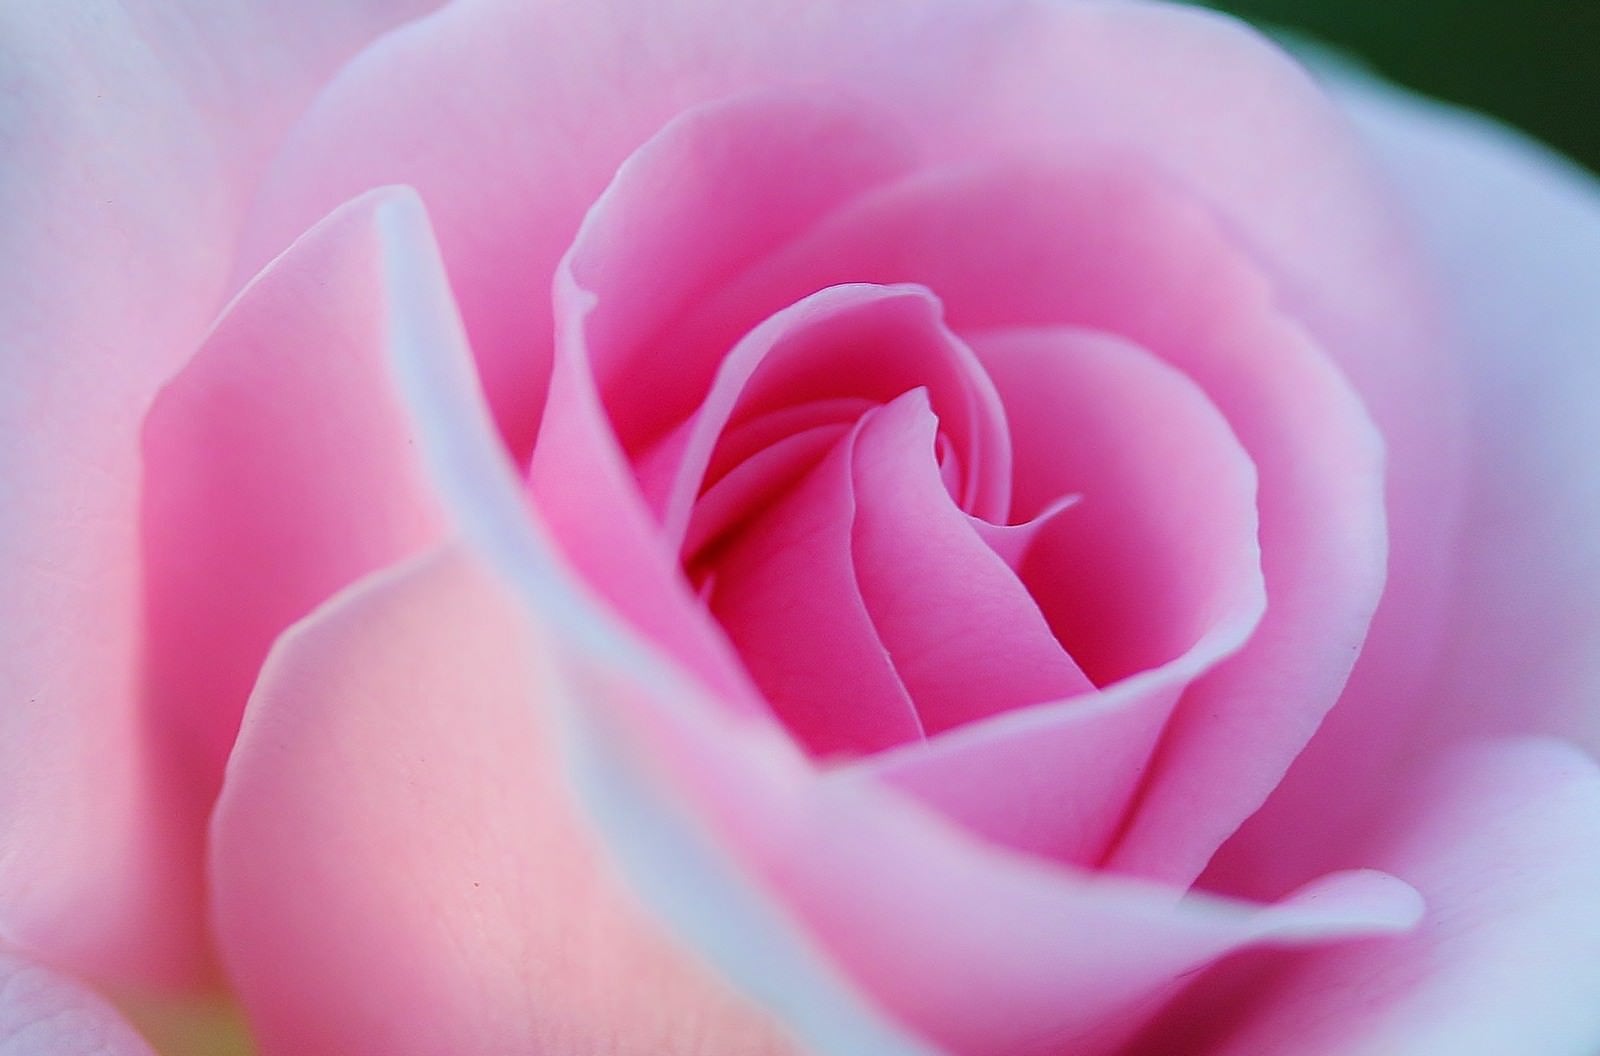 「重なり合うピンク色の花びら」の写真